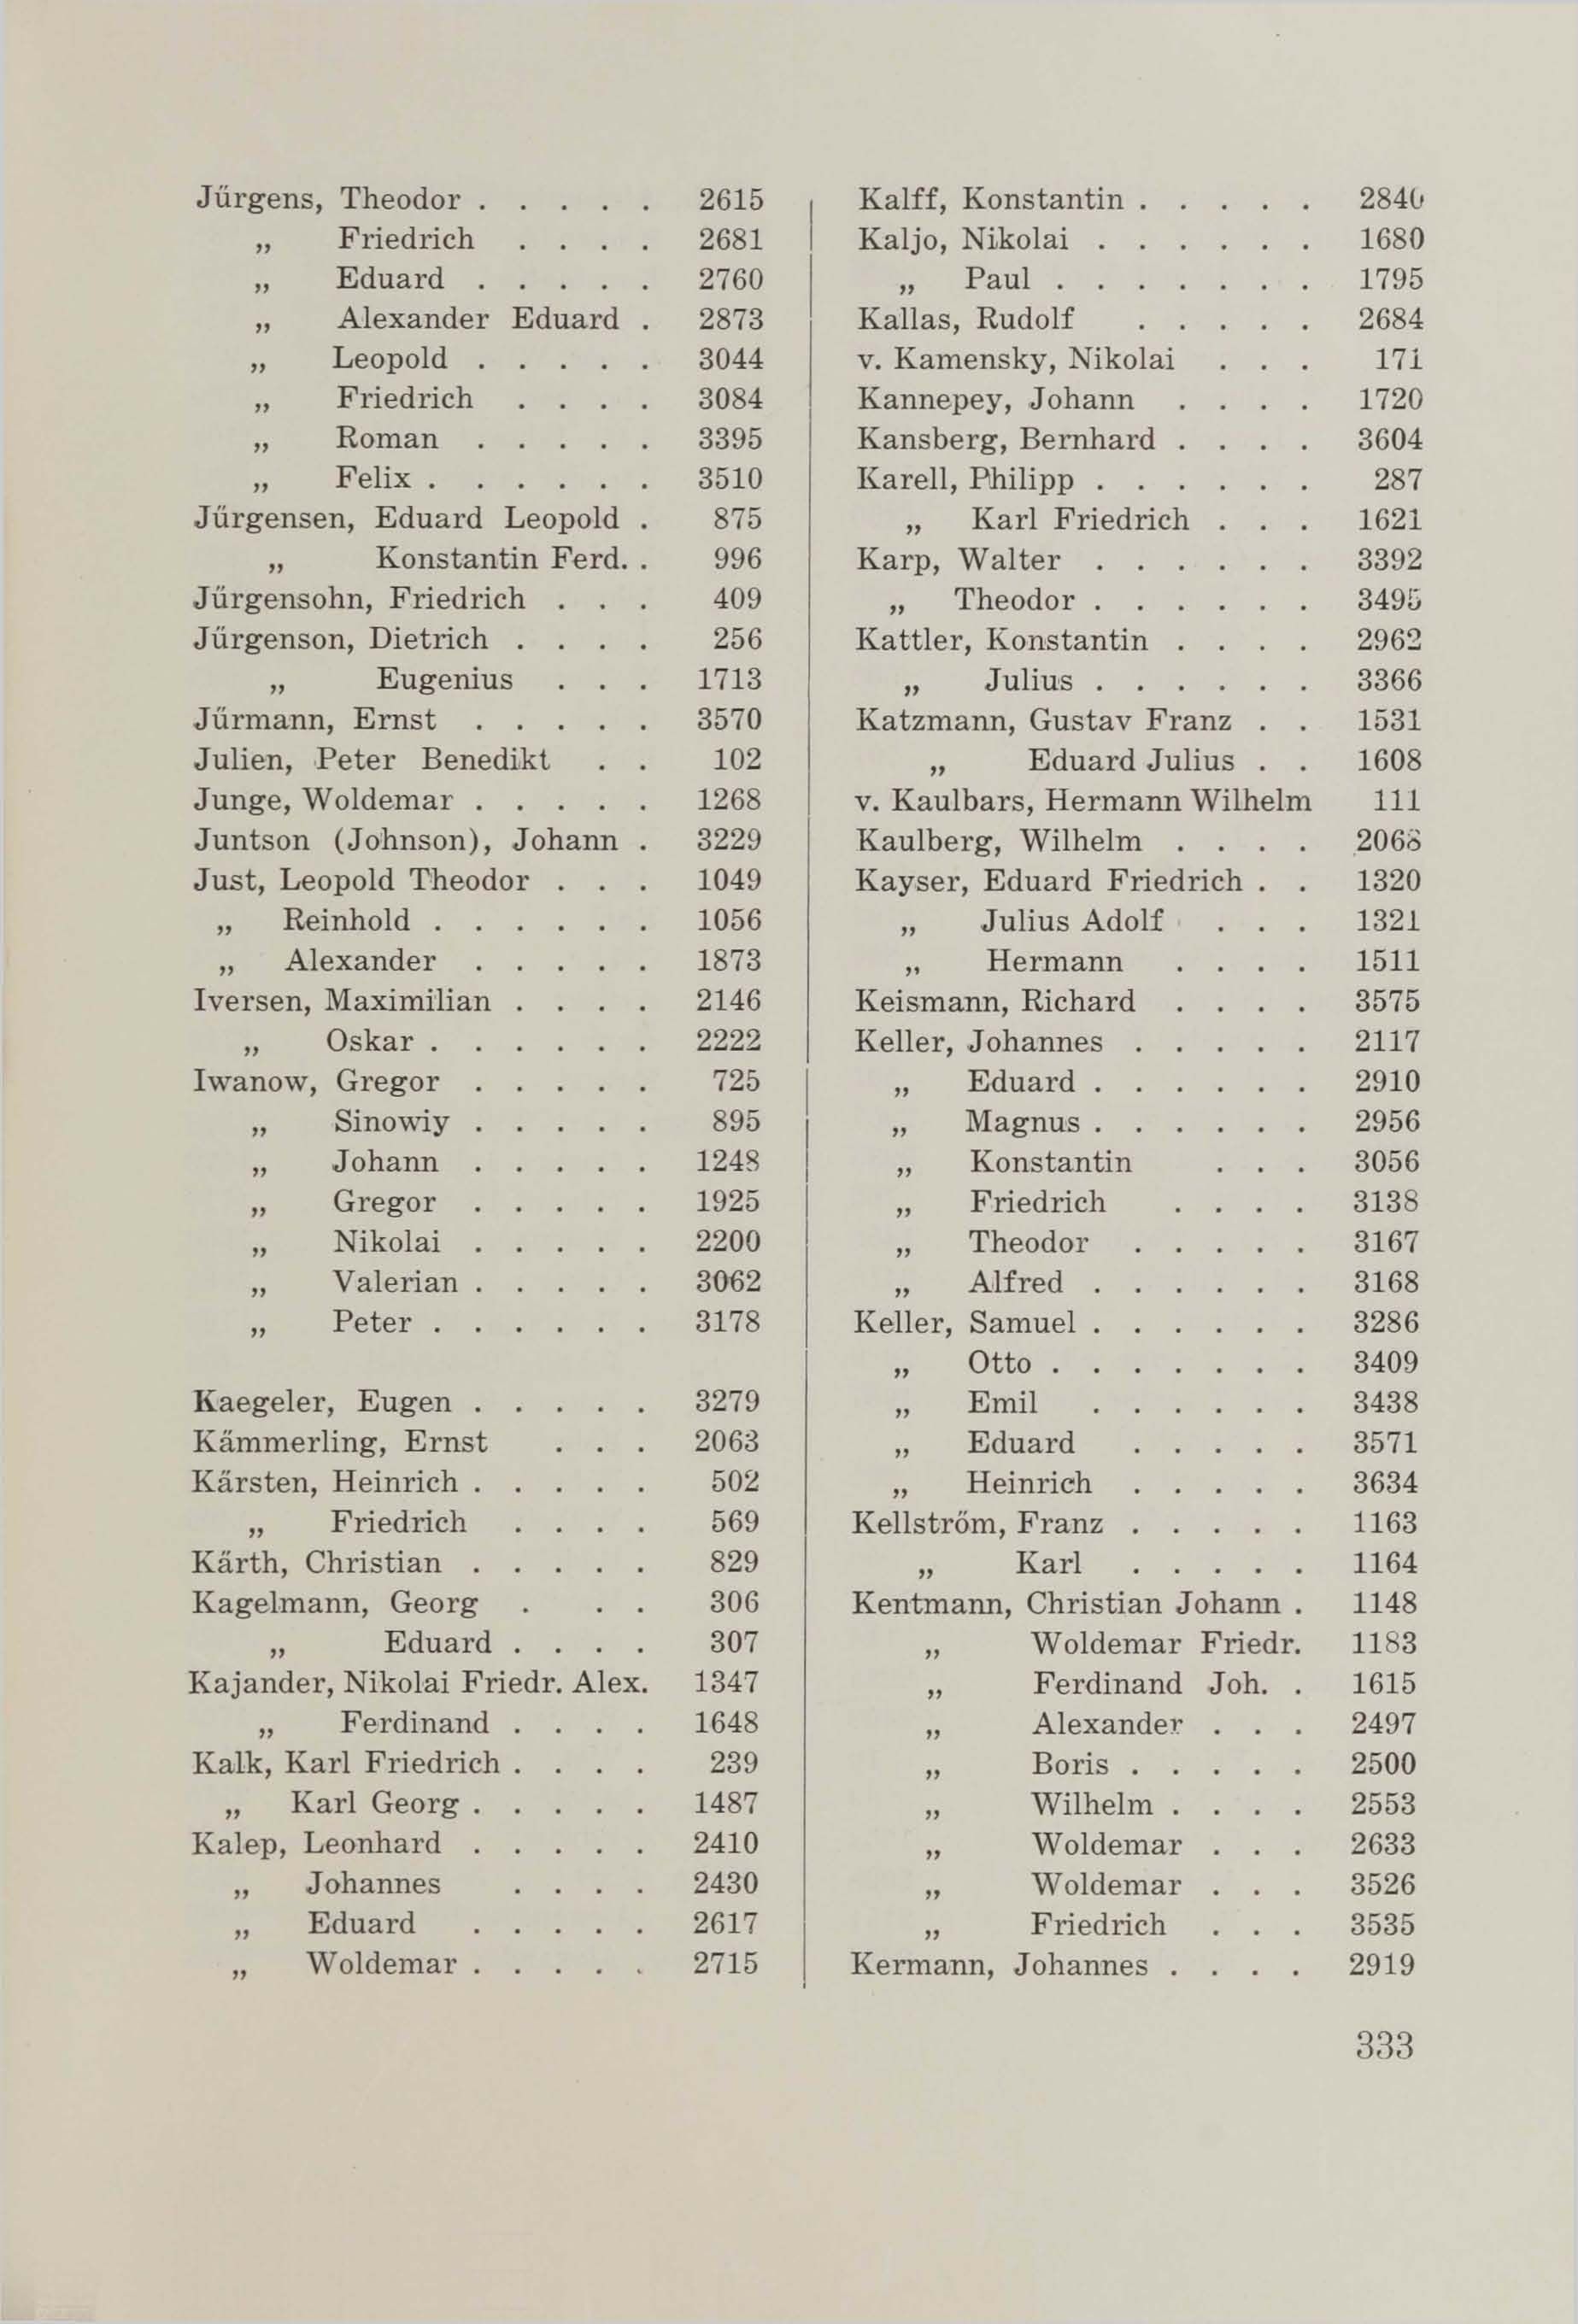 Schüler-Verzeichnis des Revalschen Gouvernements-Gymnasiums 1805–1890 (1931) | 343. (333) Main body of text